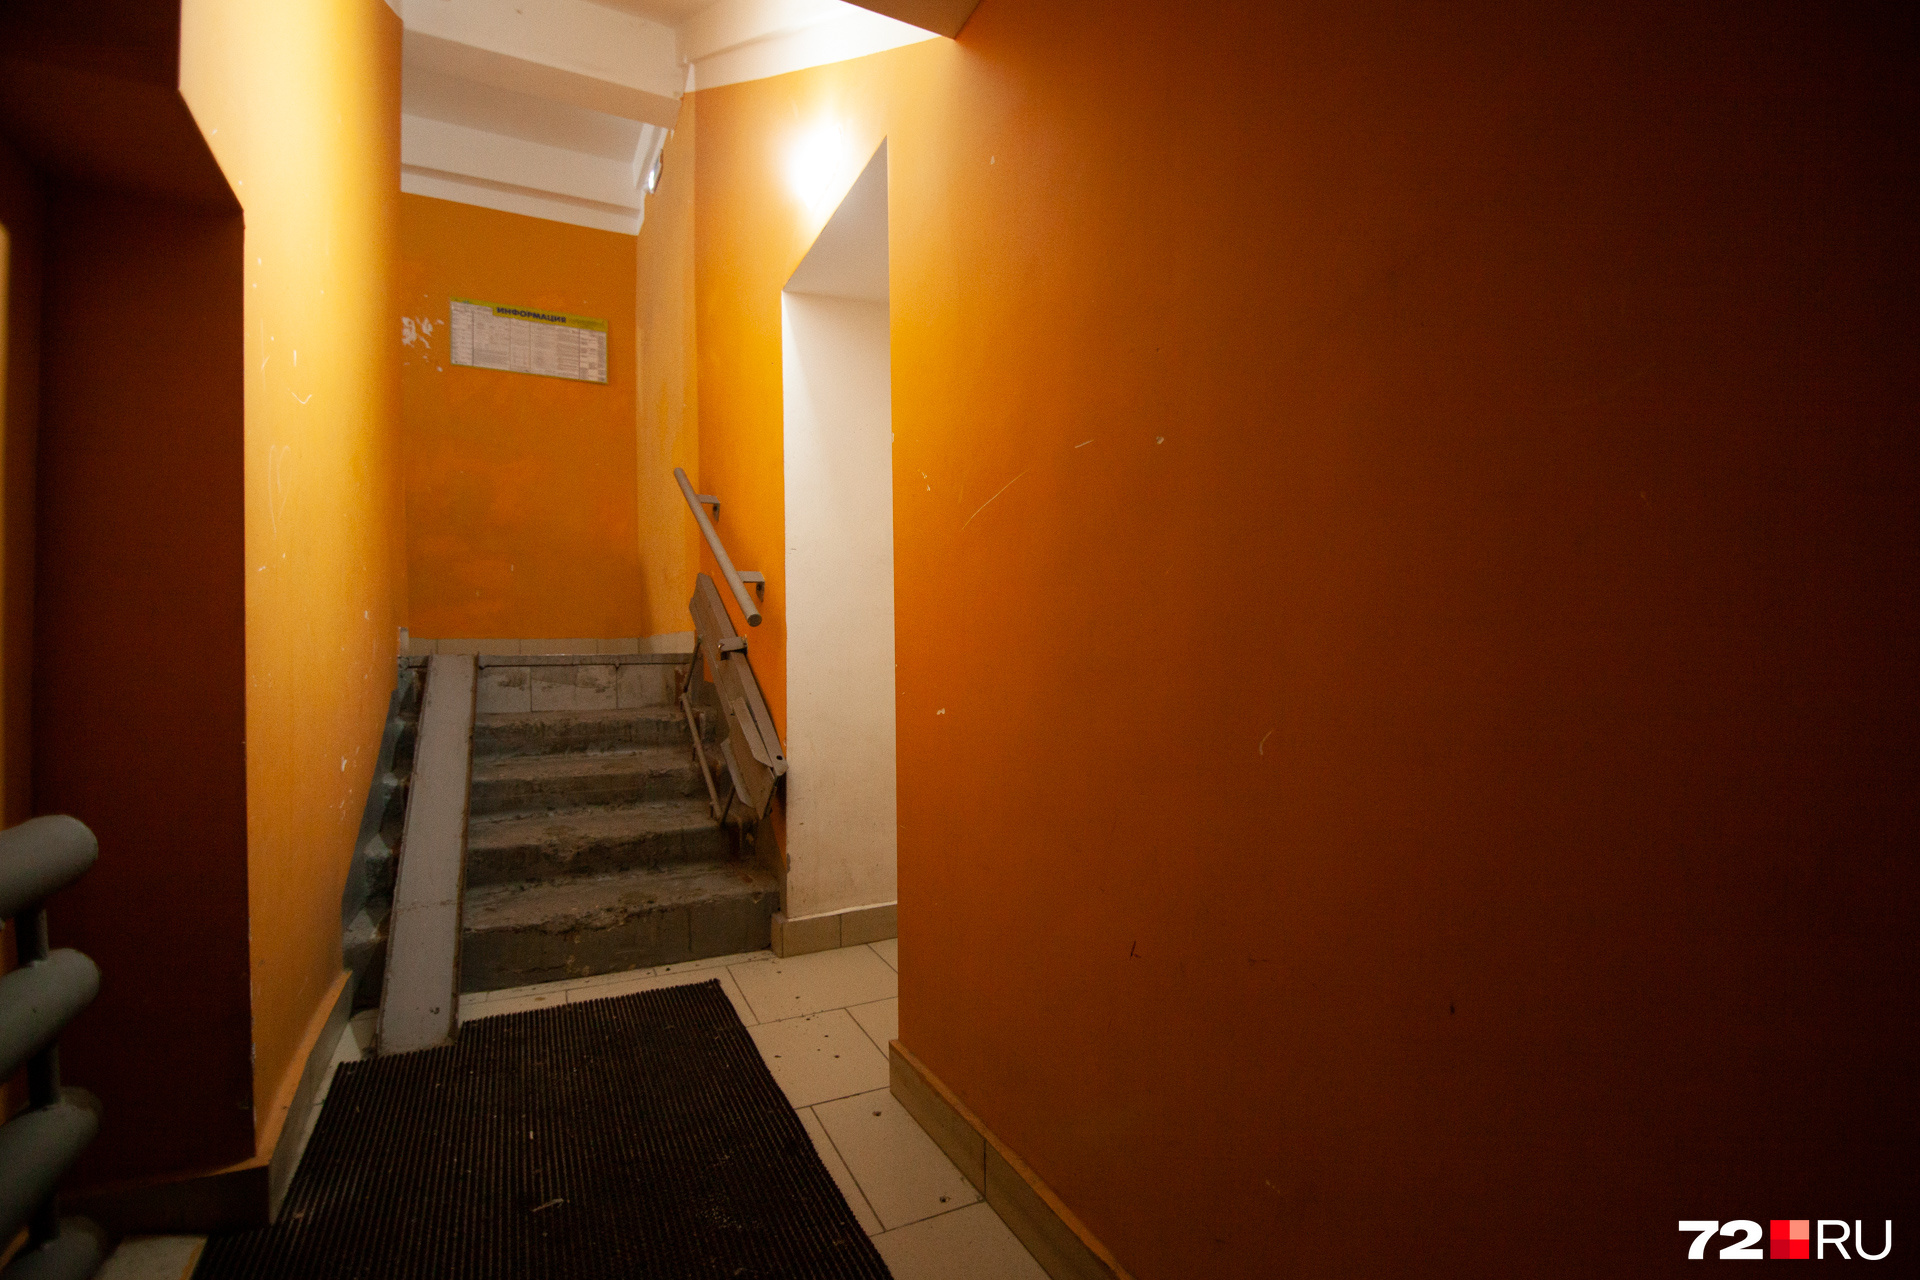 Стены дома выкрасили в оранжевый цвет